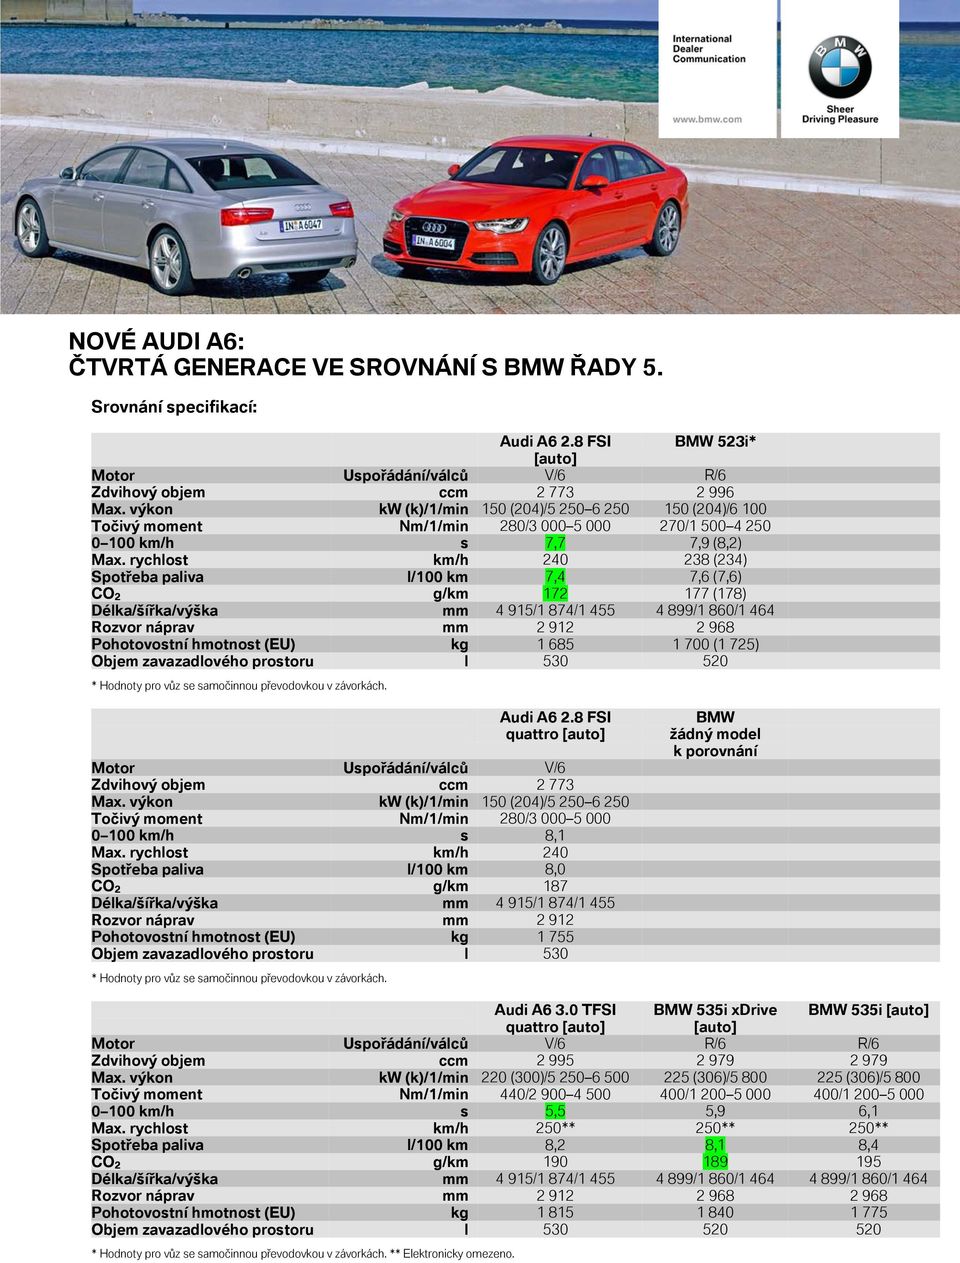 rychlost km/h 240 238 (234) Spotřeba paliva l/100 km 7,4 7,6 (7,6) CO 2 g/km 172 177 (178) Pohotovostní hmotnost (EU) kg 1 685 1 700 (1 725) Audi A6 2.